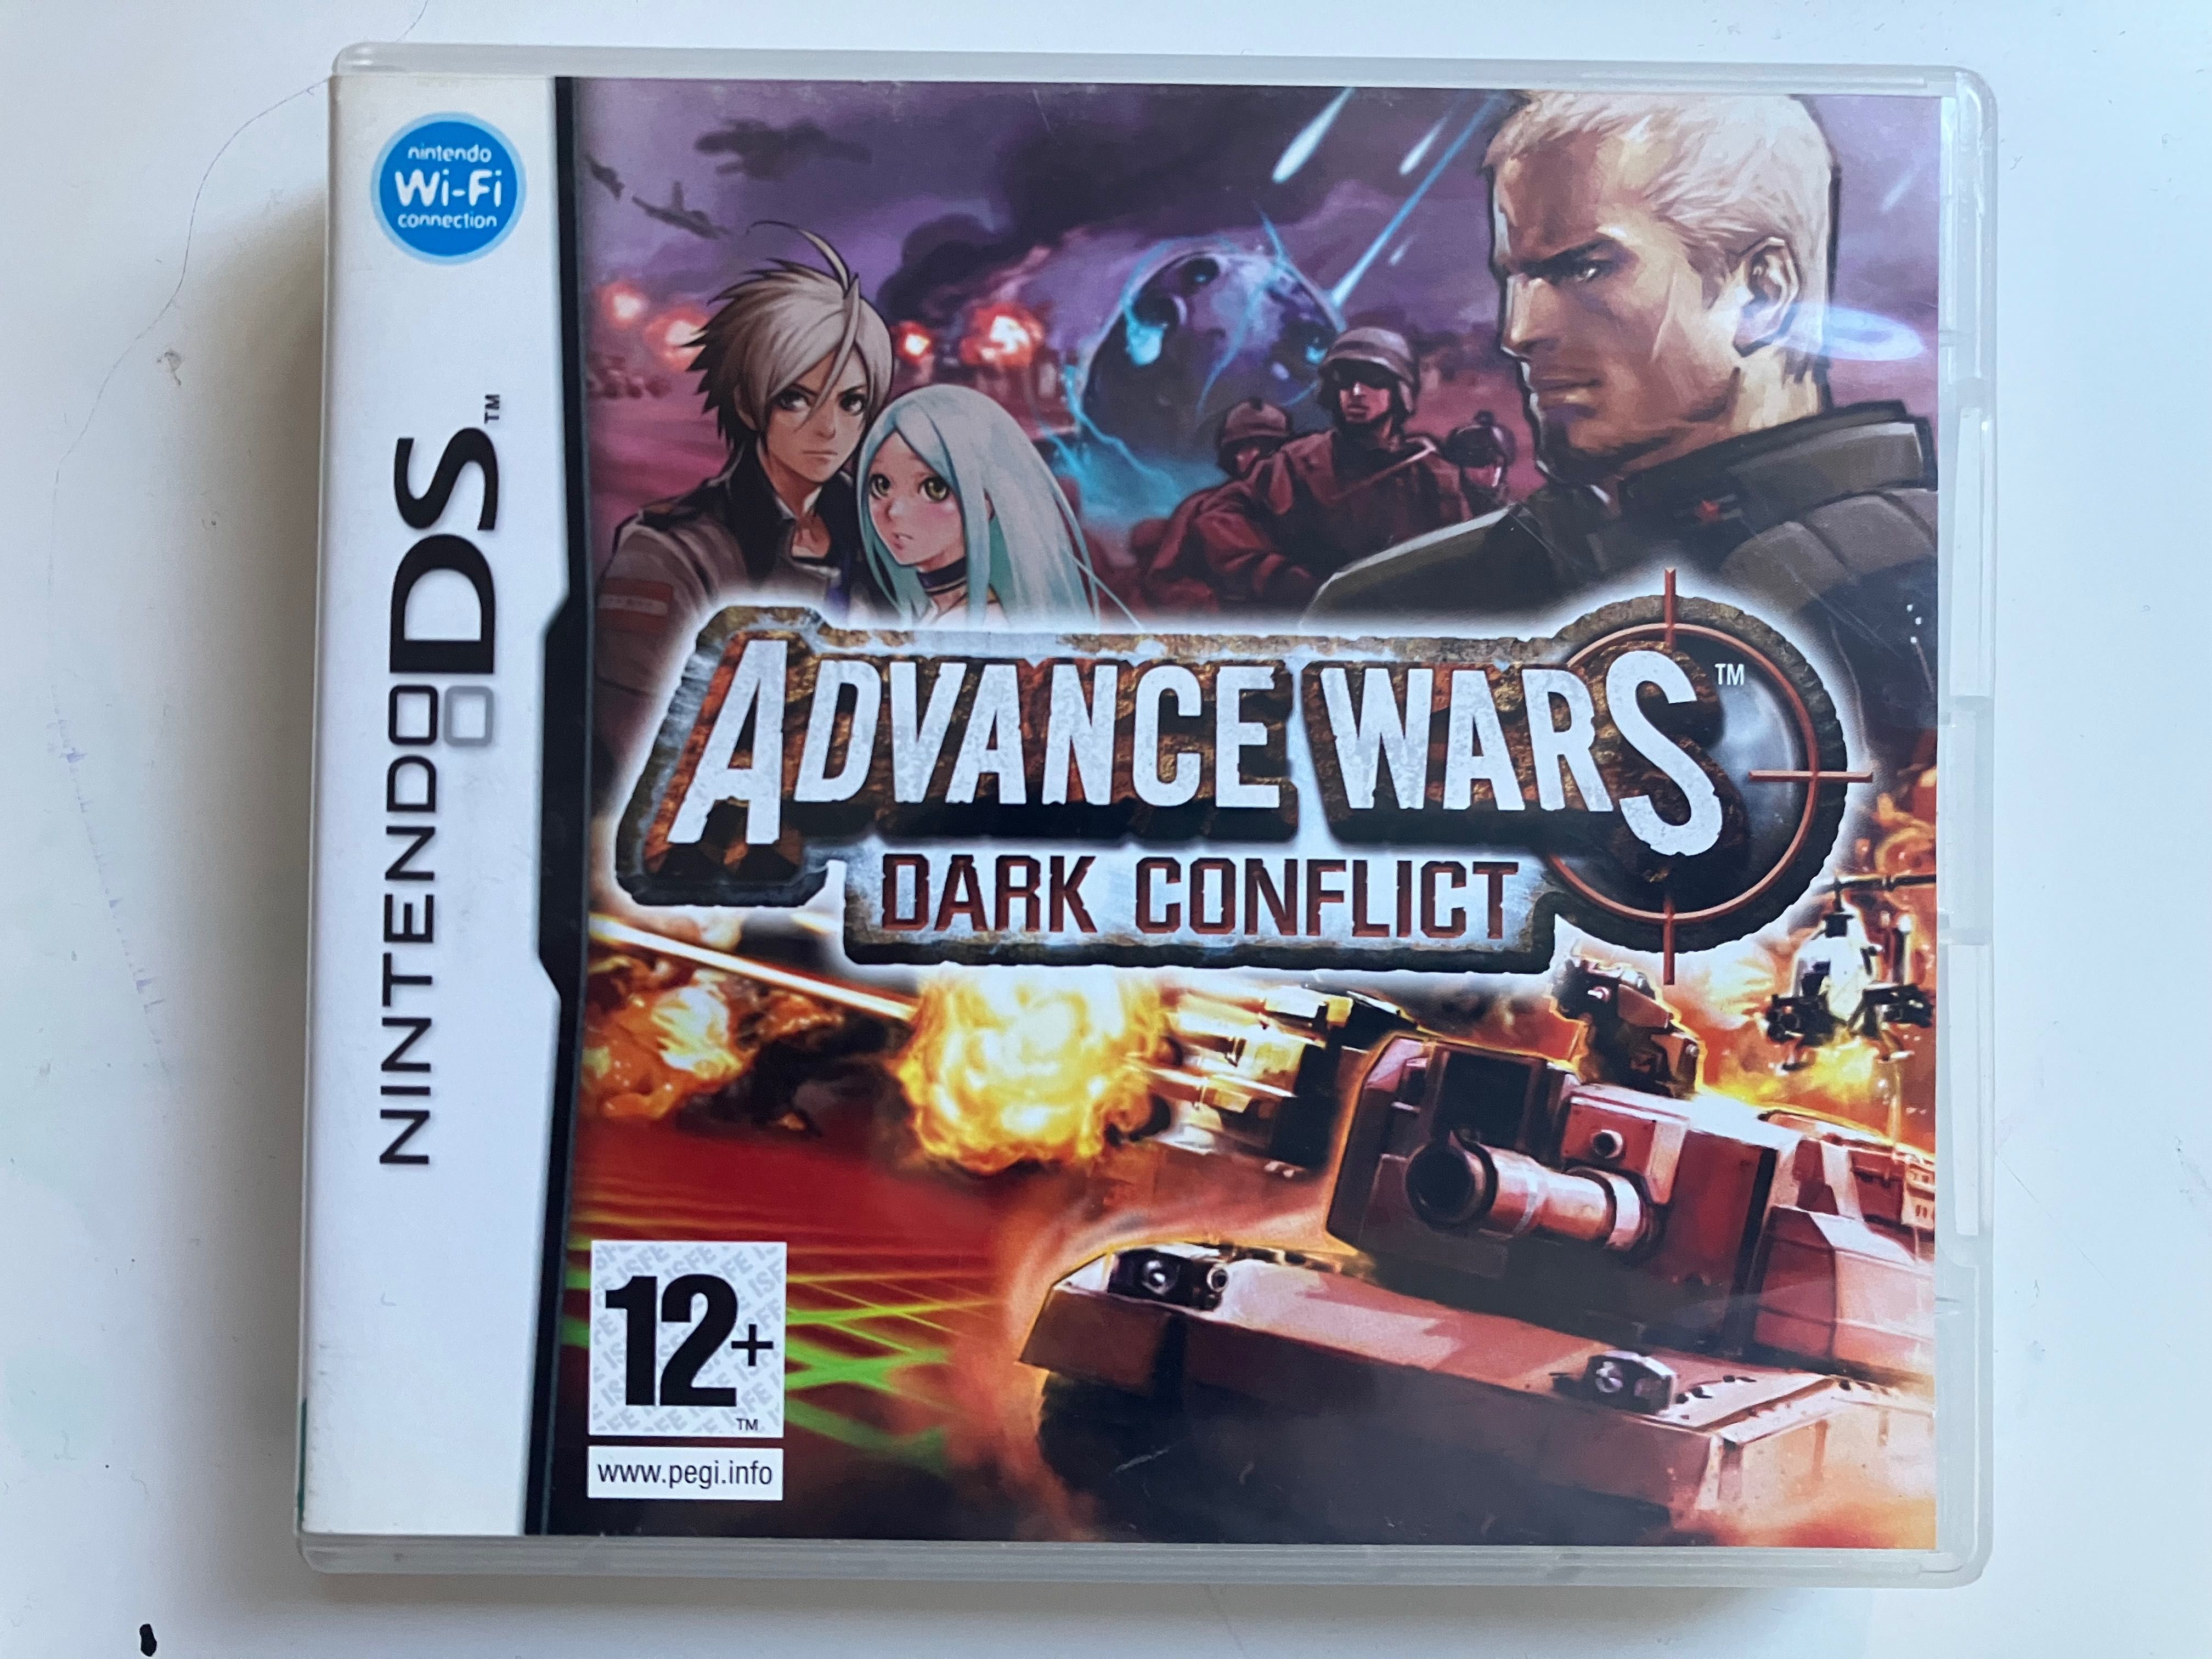 Advance Wars Dark Conflict Nintendo DS